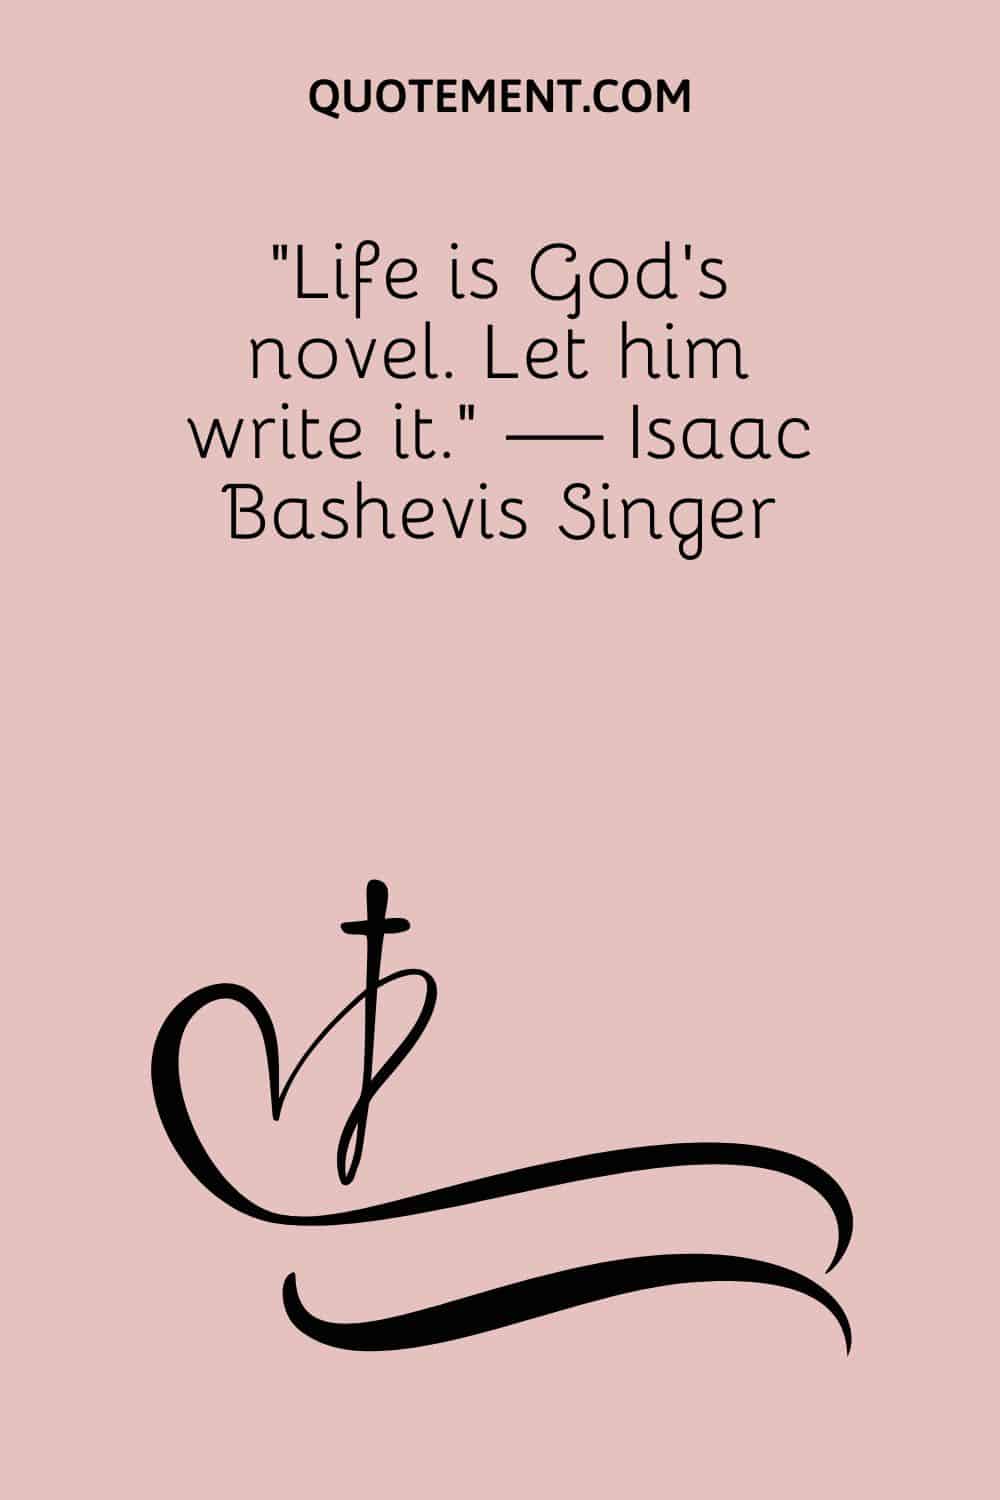 Life is God’s novel. Let him write it